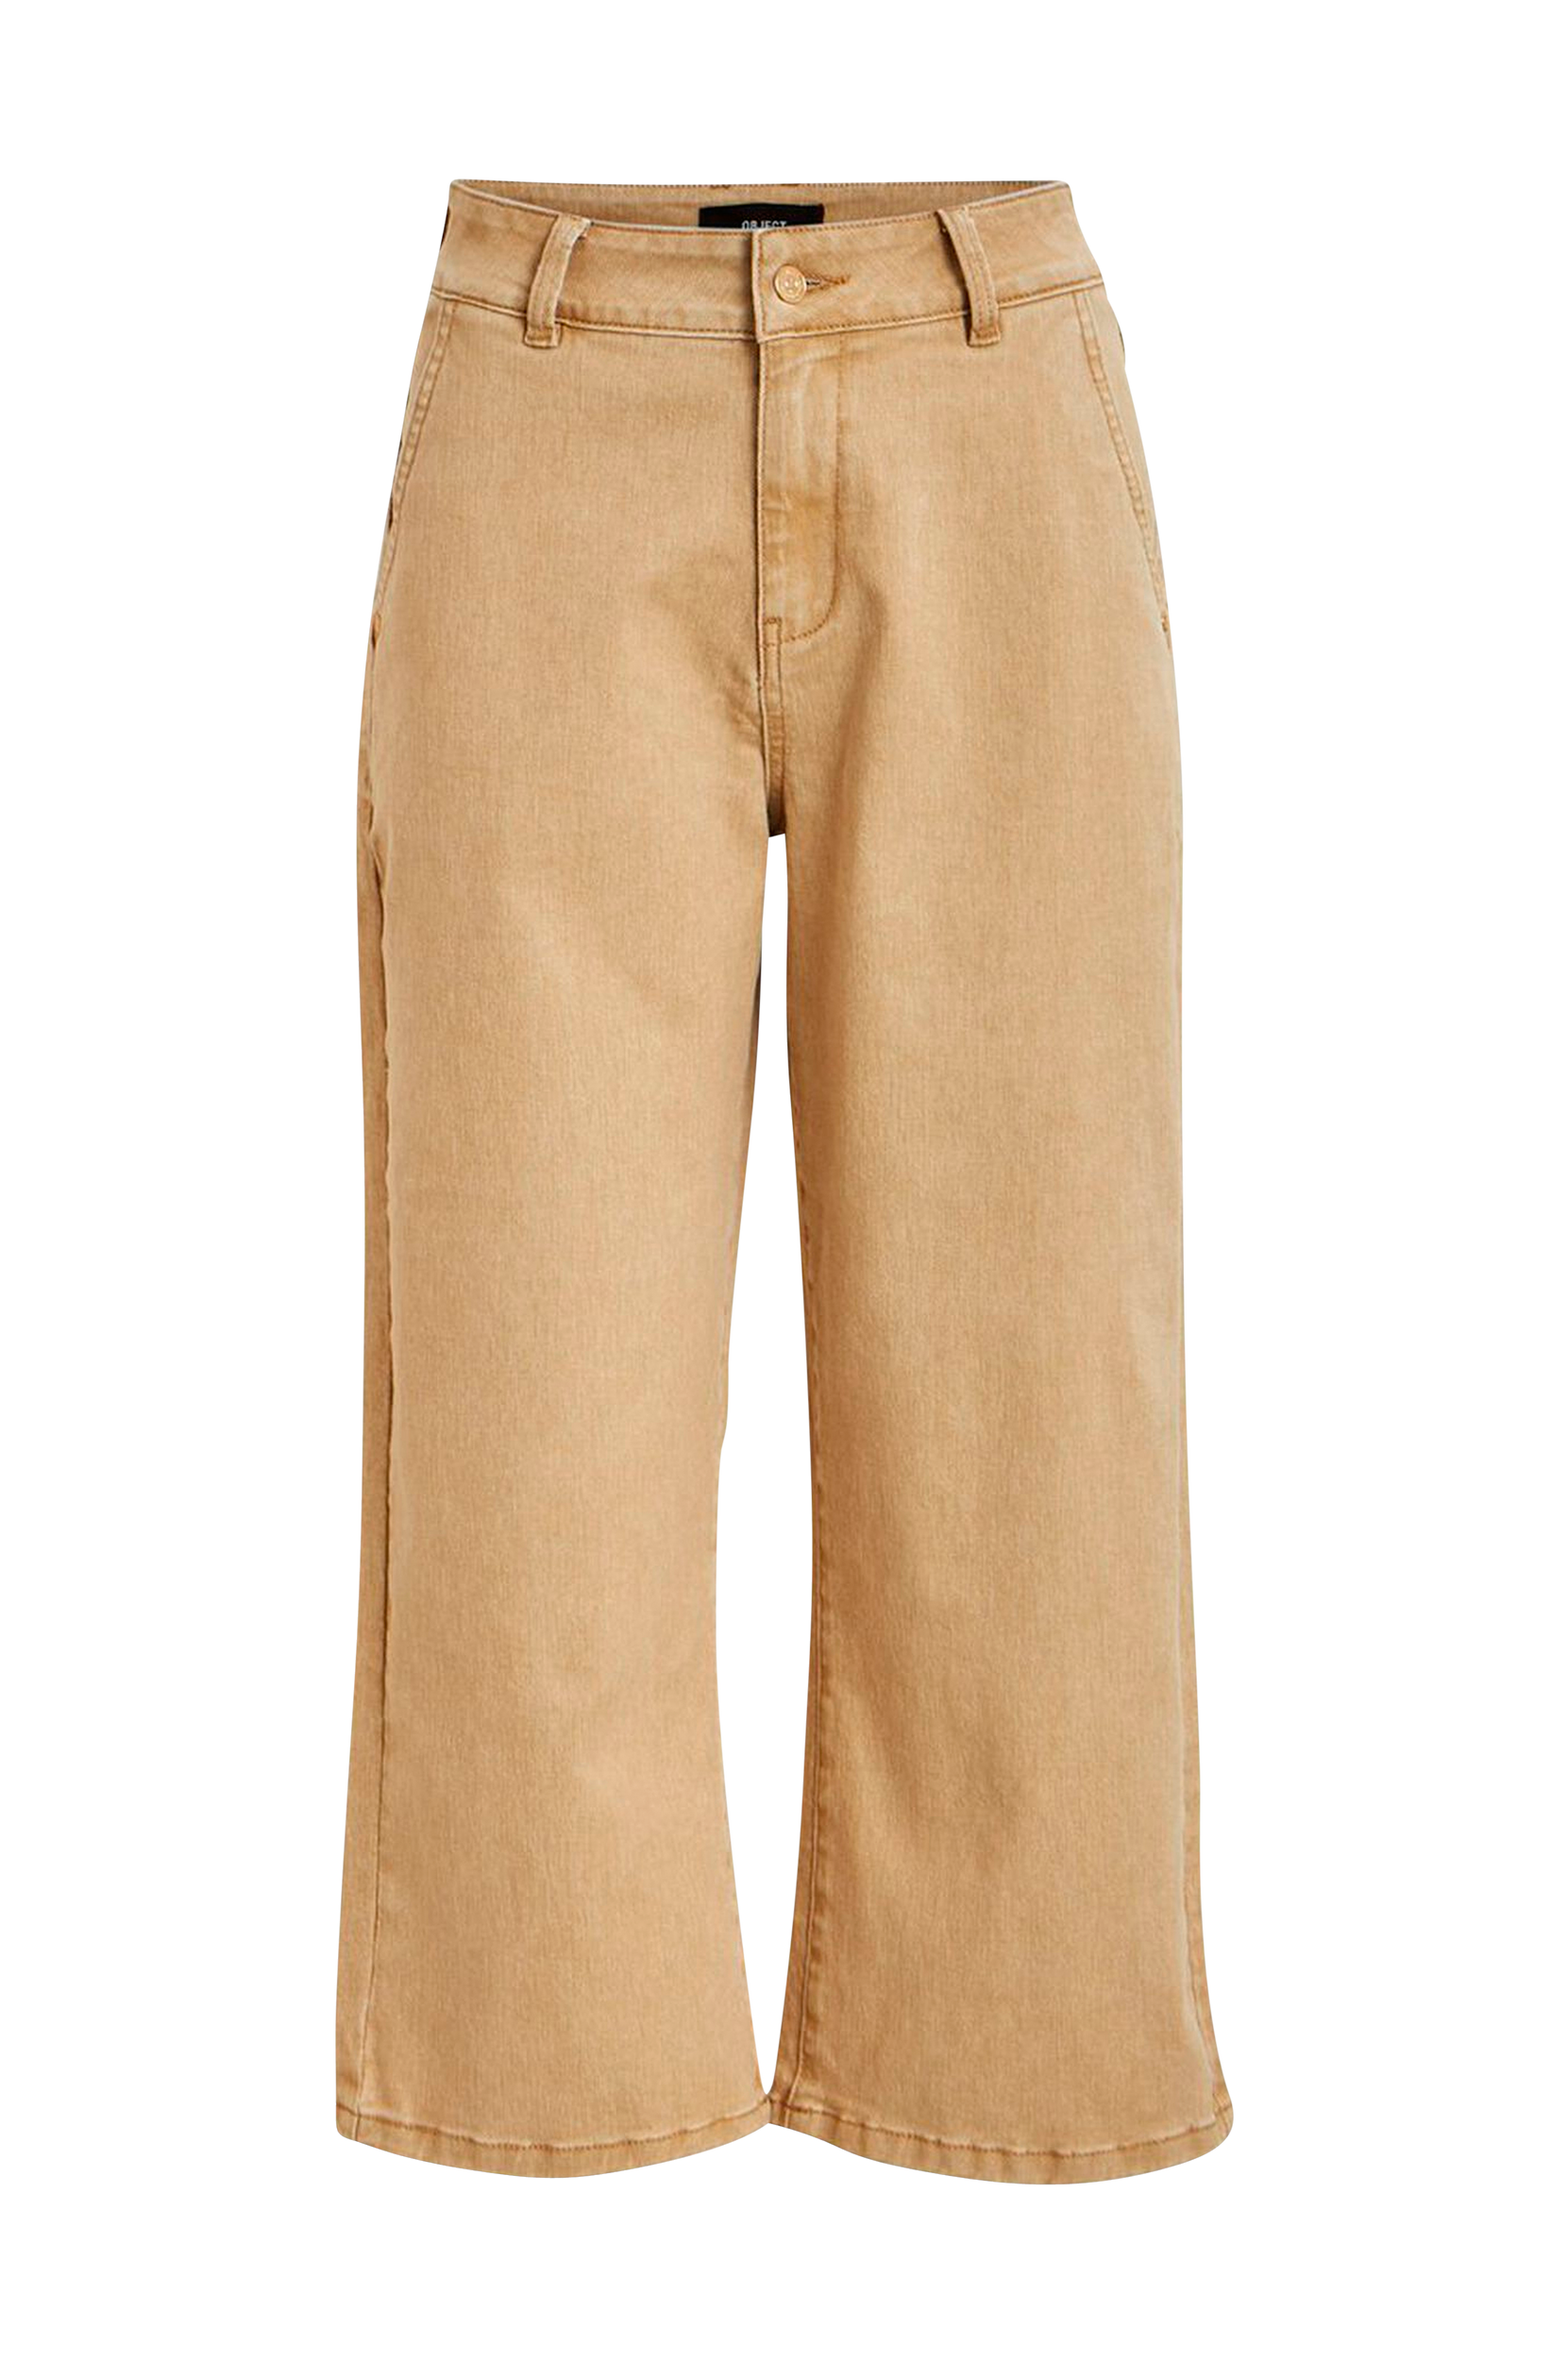 Farkut objMarina MW Twill Jeans 108, Object